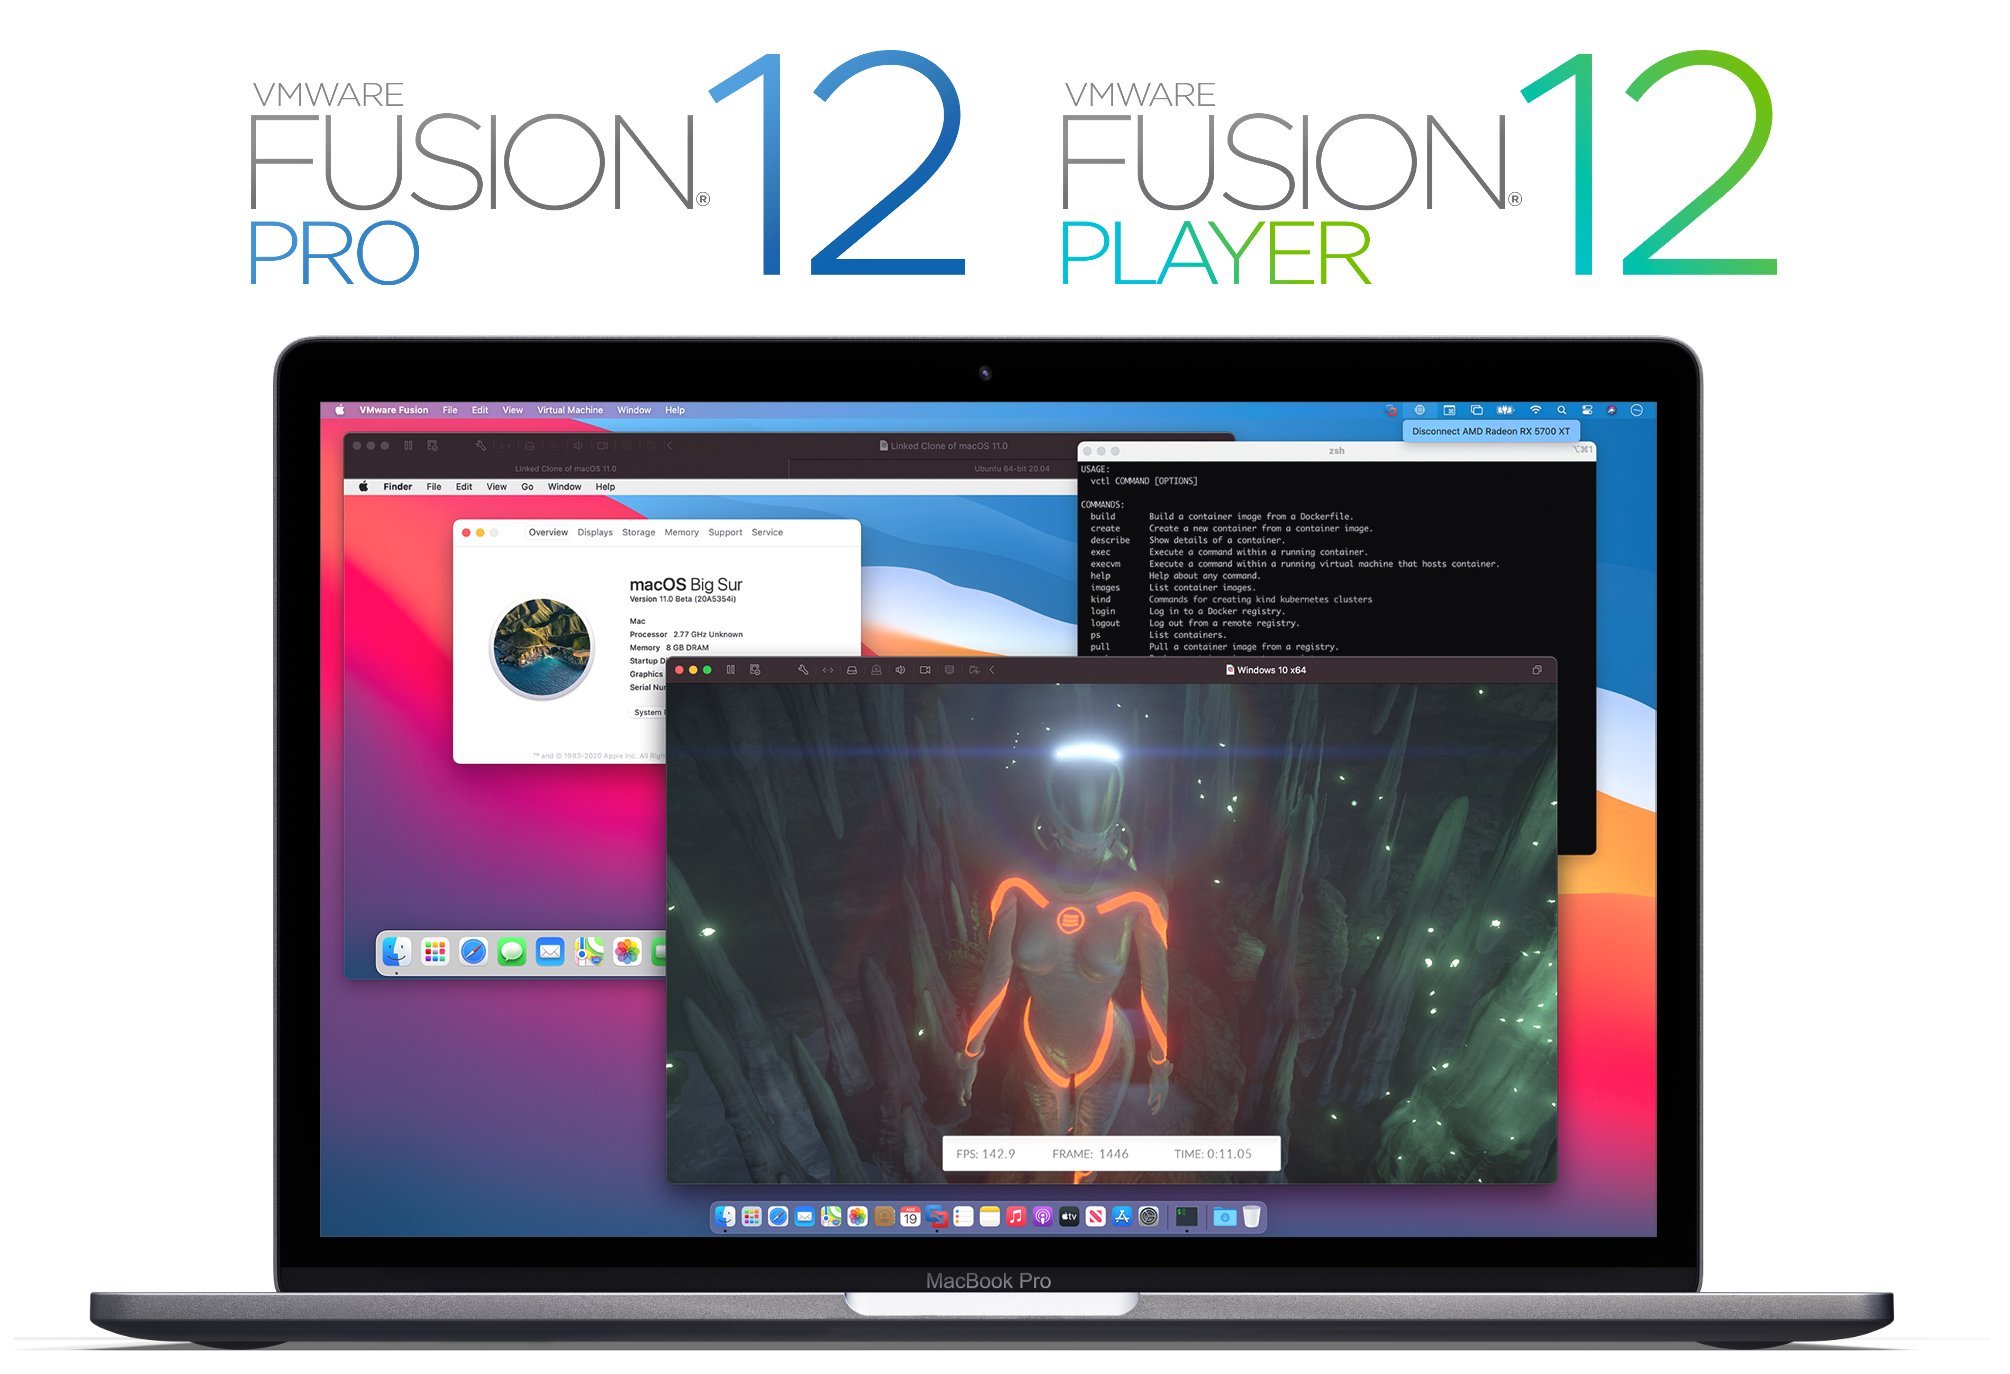 vmware fusion 12 for mac